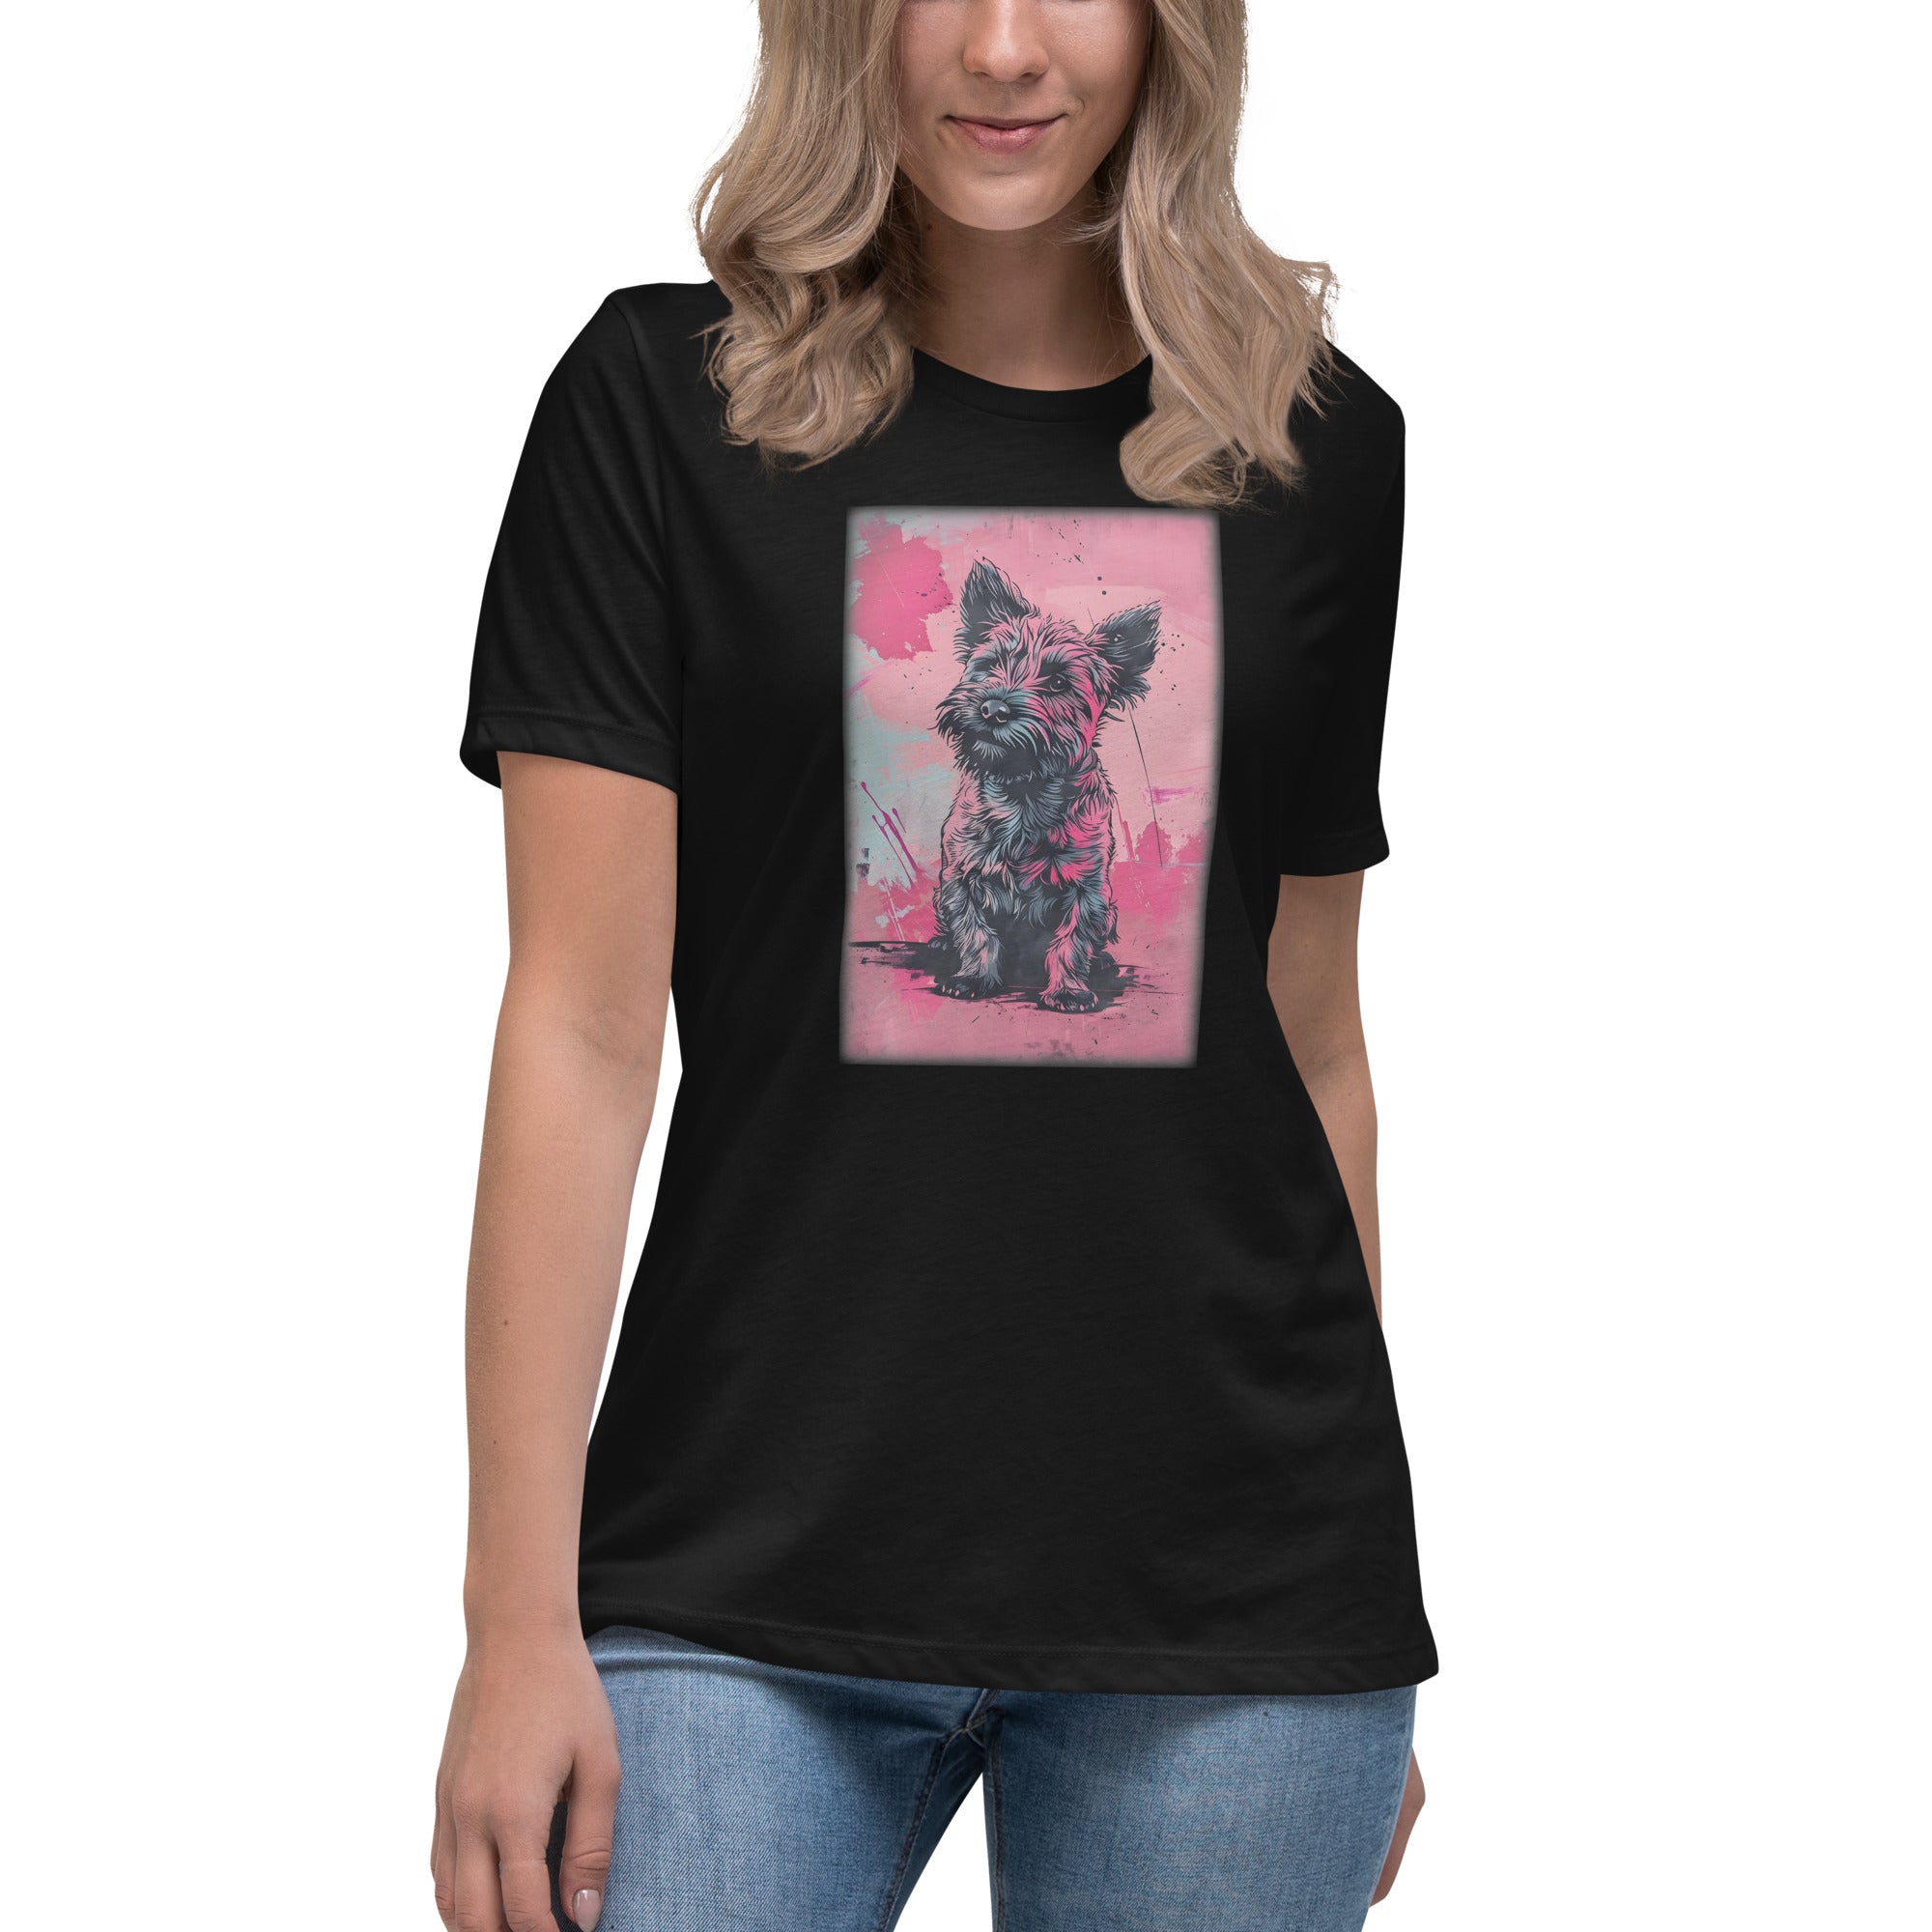 Glen of Imaal Terrier Women's Relaxed T-Shirt